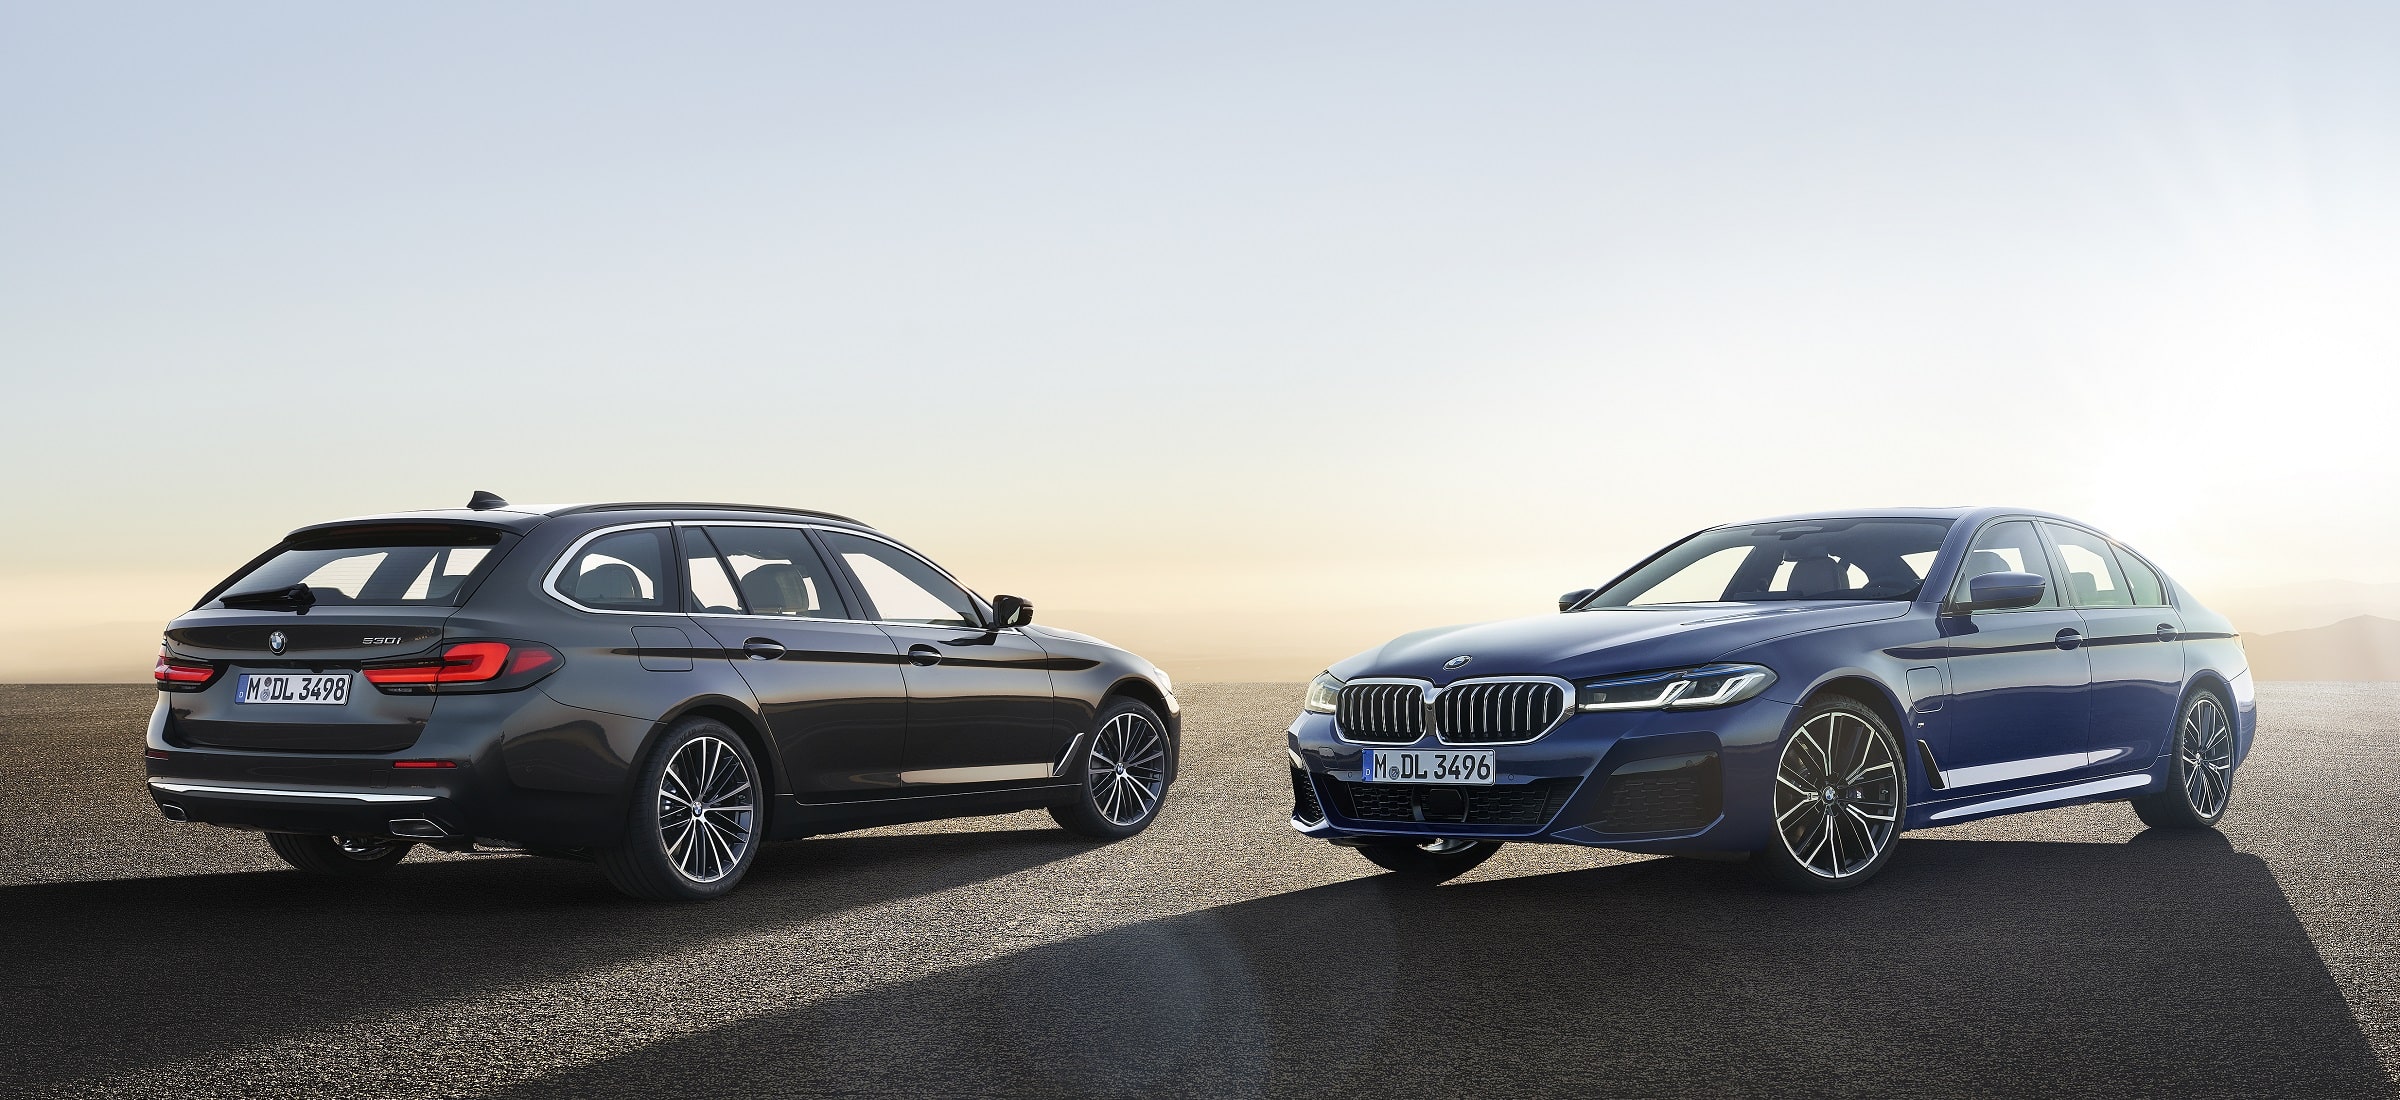 Der neue BMW 5er - Facelift 2020